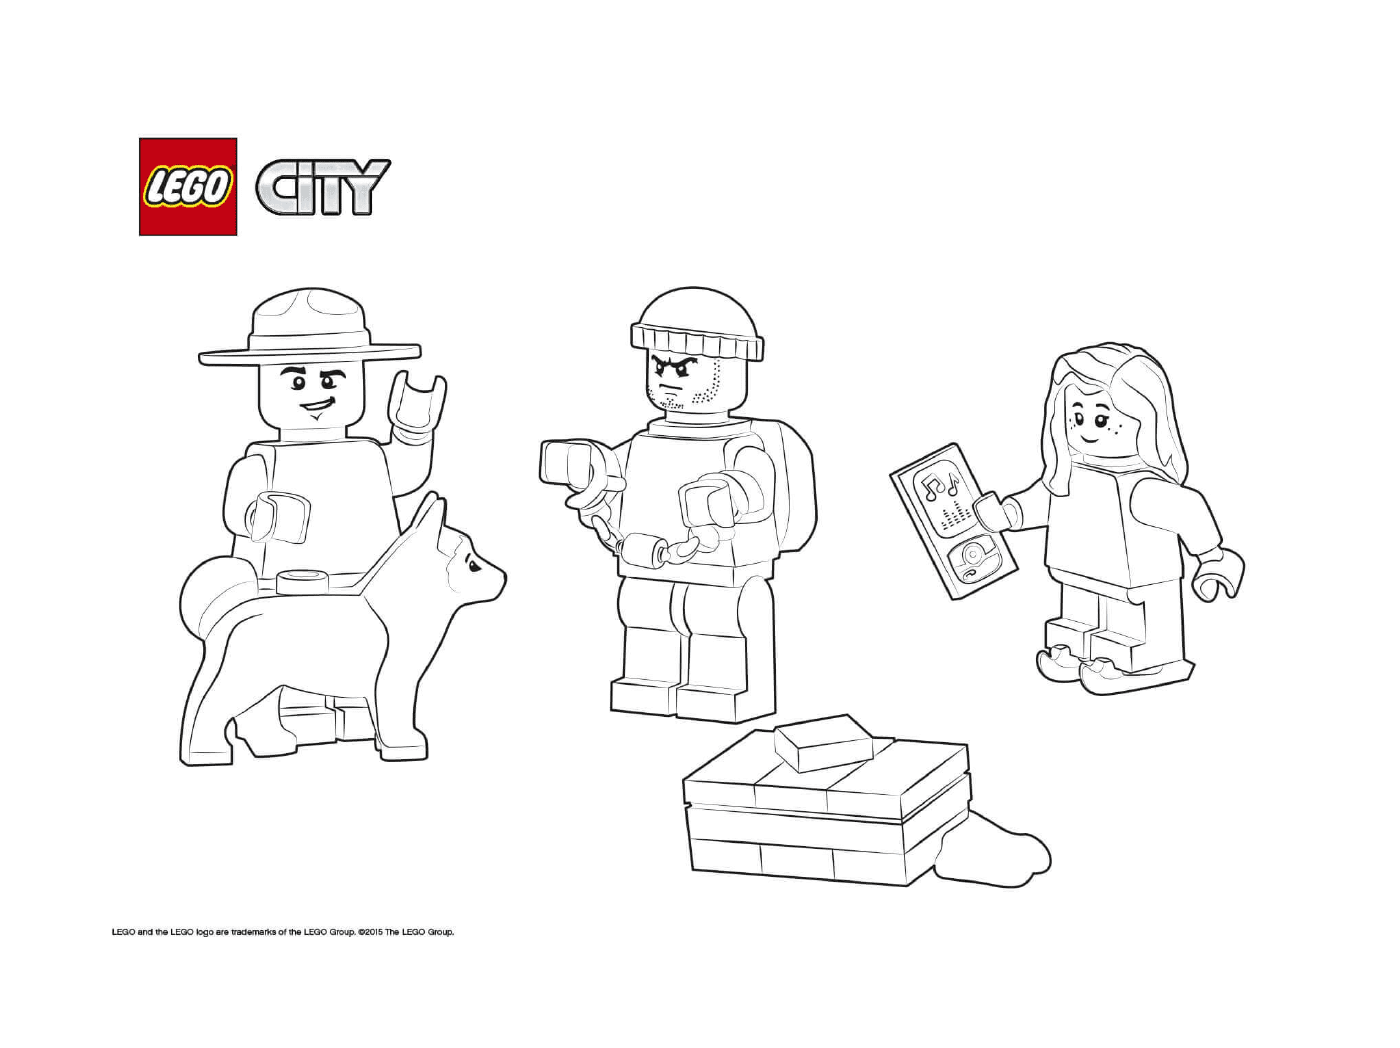  Cherif Lego Stadt und Gefangener 